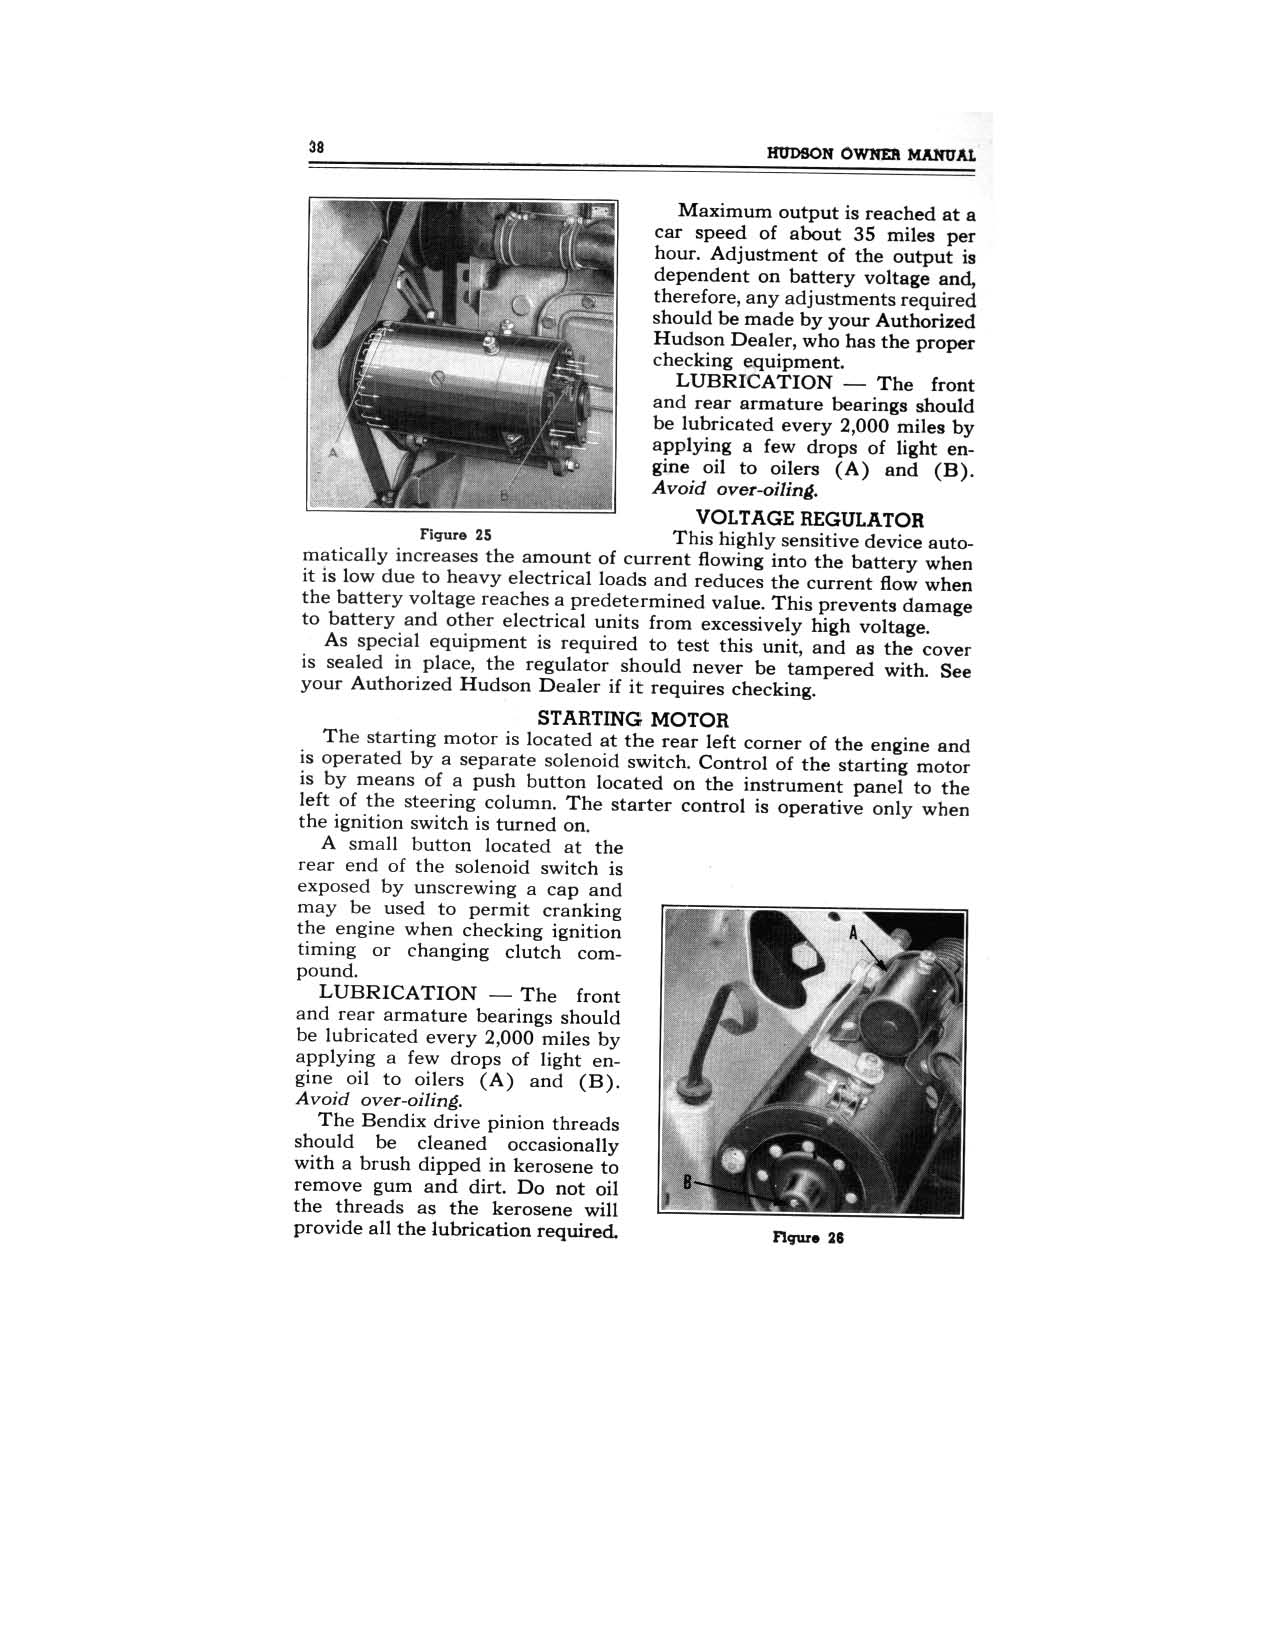 1949 Hudson Owners Manual-40